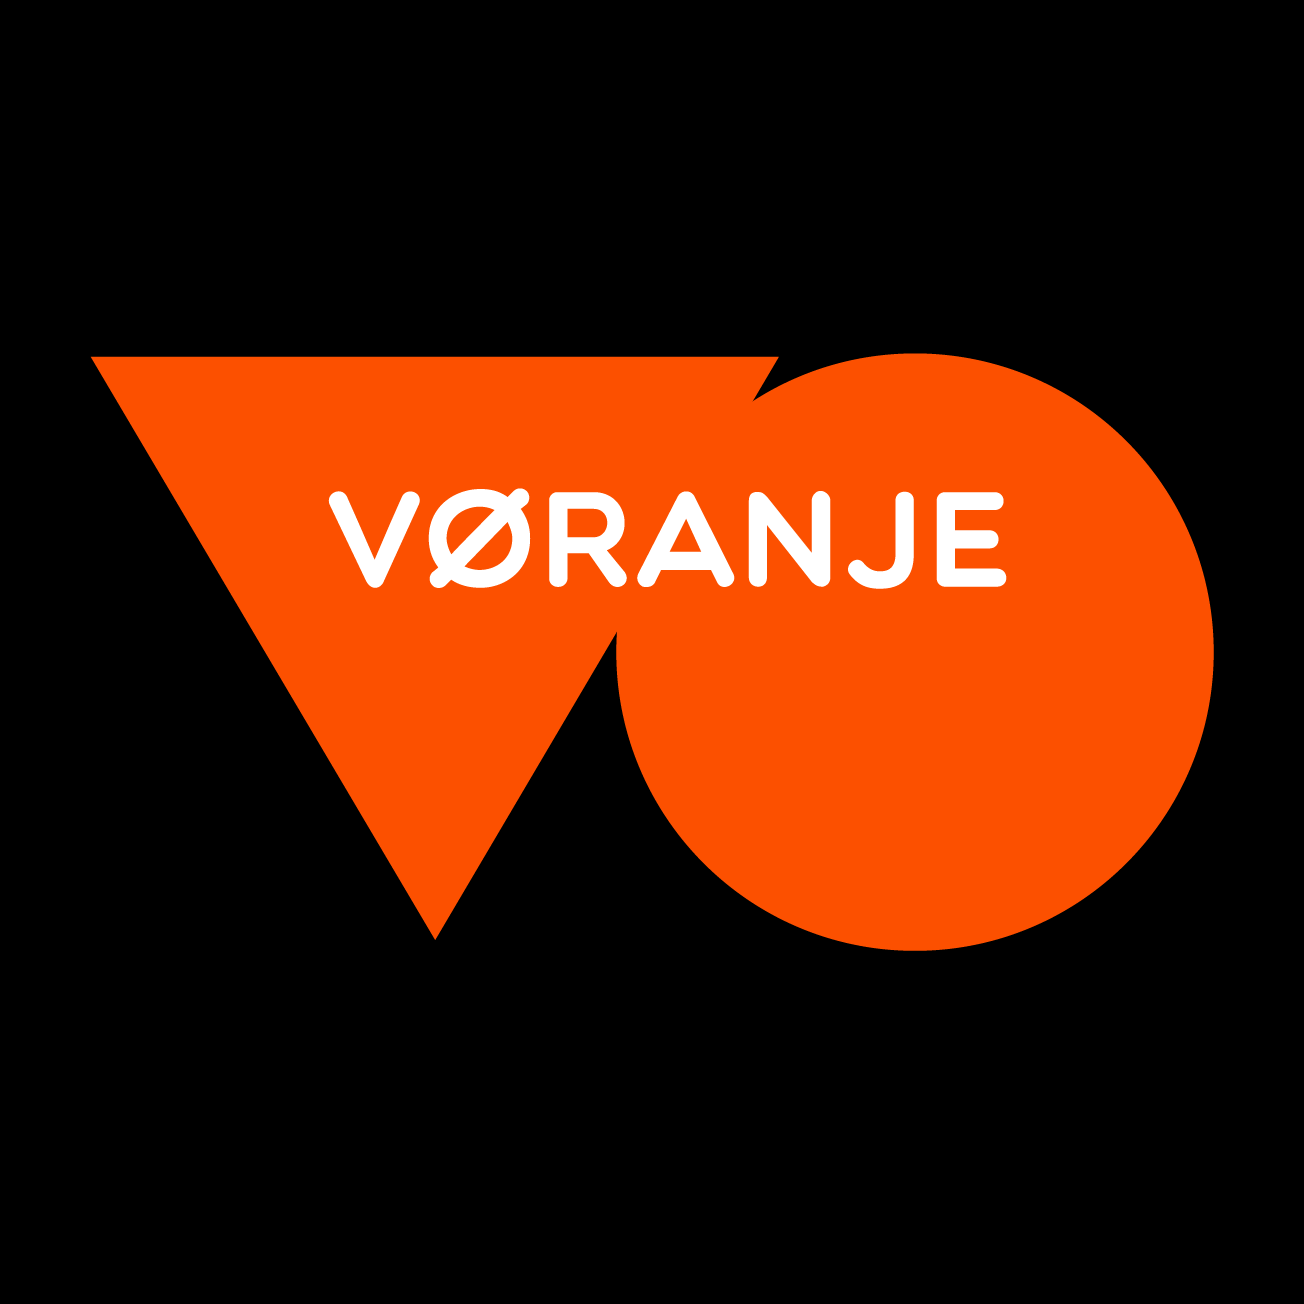 Club Image for VORANJE